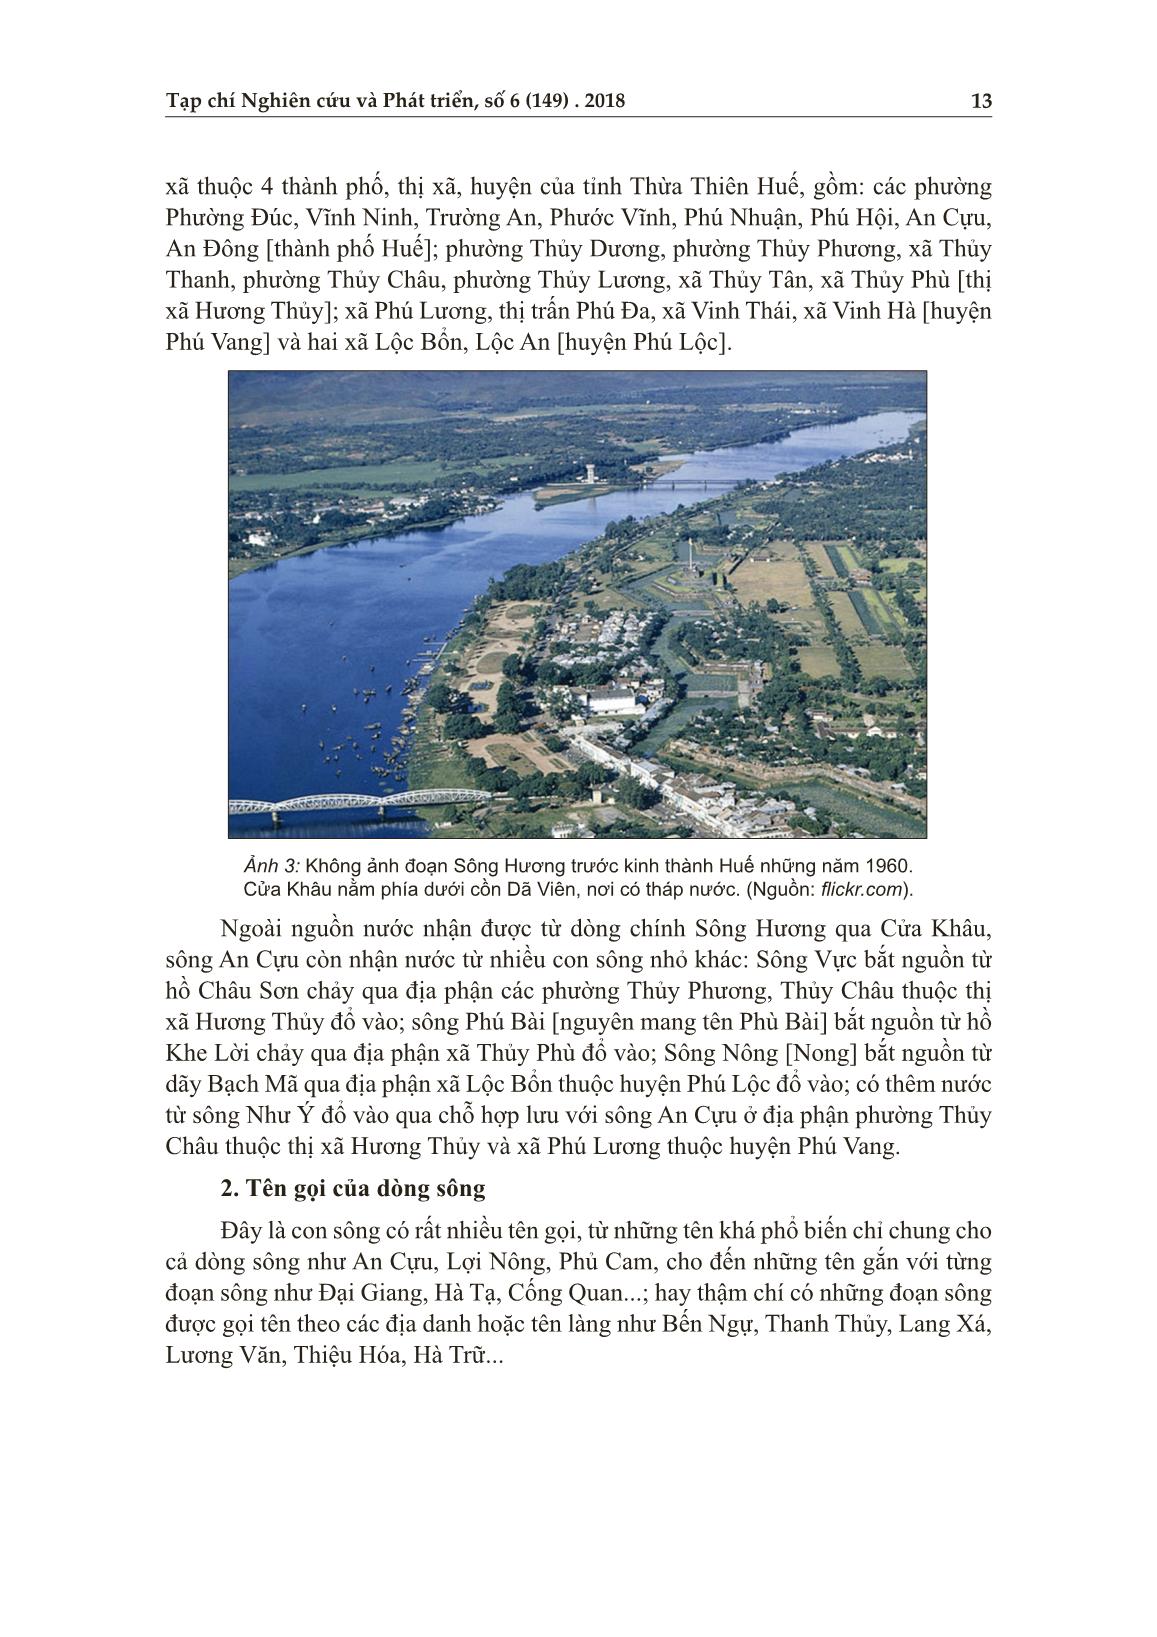 Đi tìm diện mạo của một dòng sông cổ: Sông an cựu trang 3